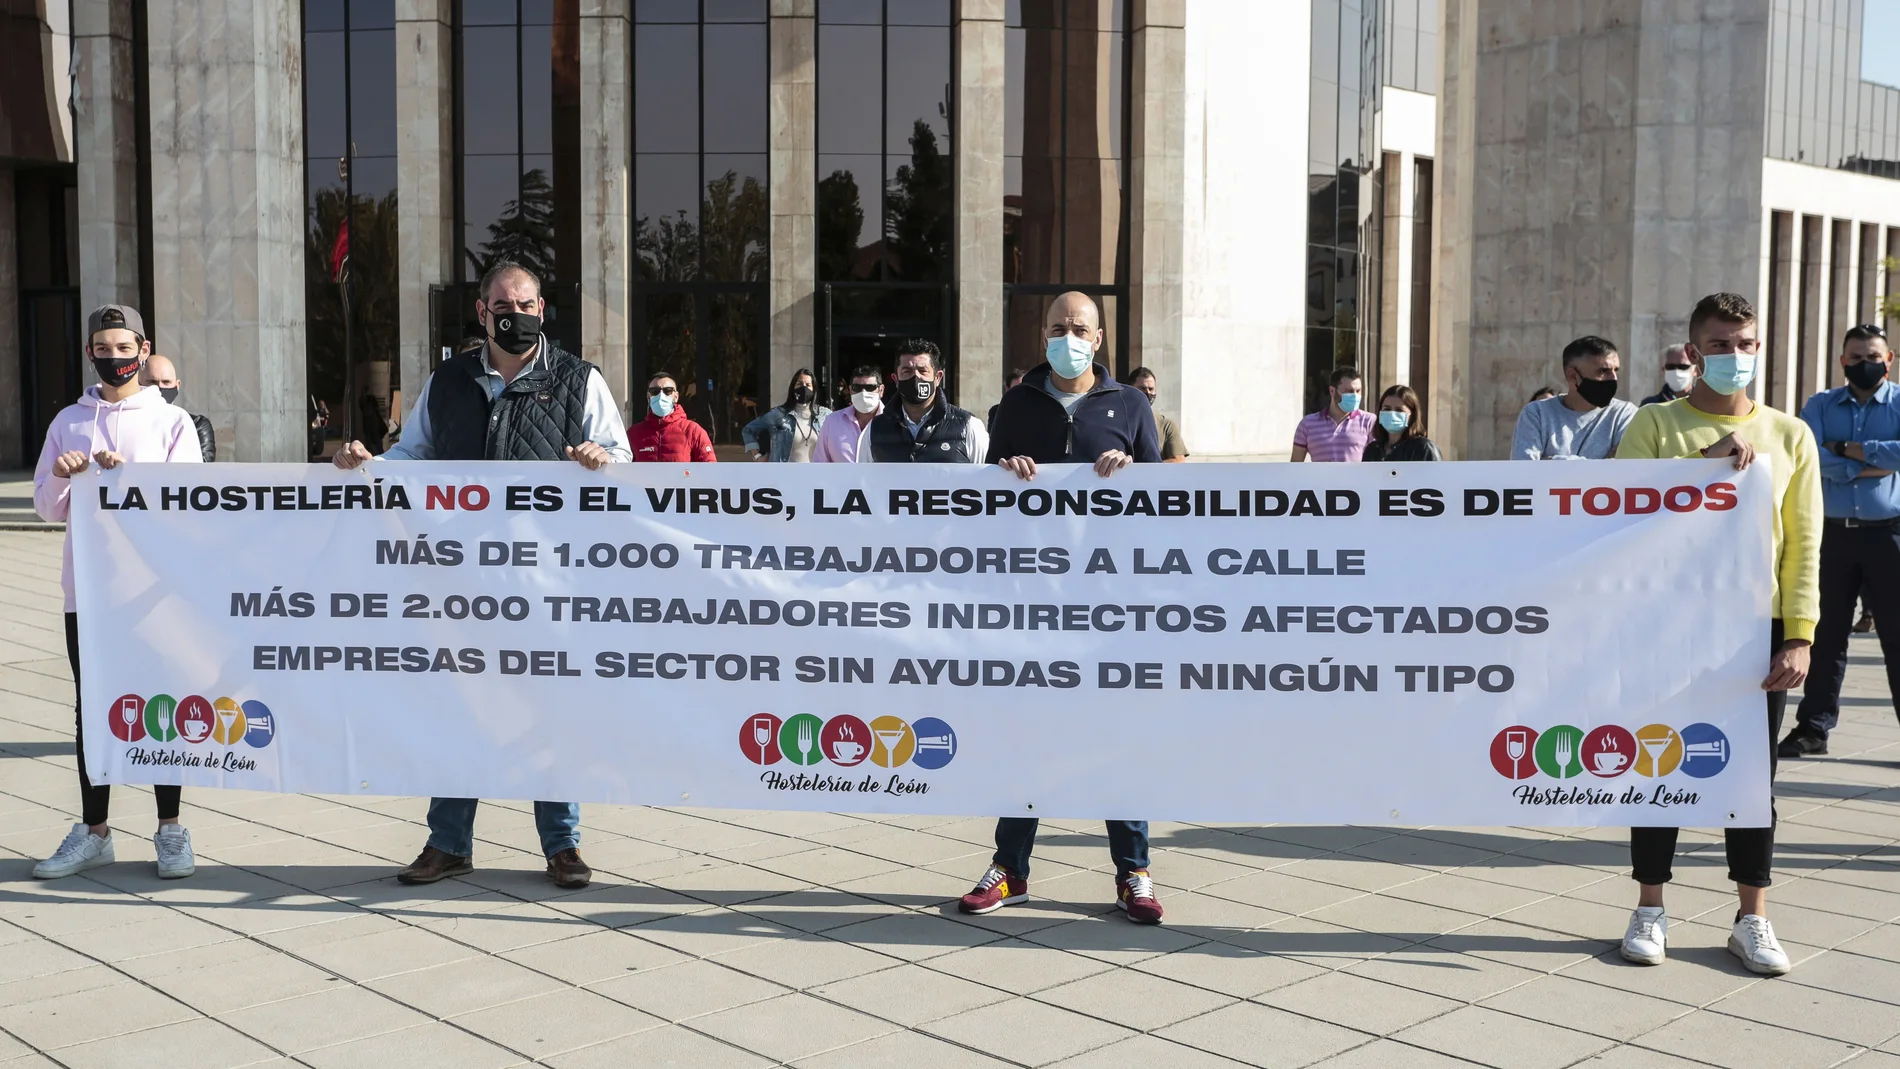 La Asociación de Hostelería de León organiza una caravana para reclamar al Gobierno que incluya en la prórroga de los ERTEs al sector